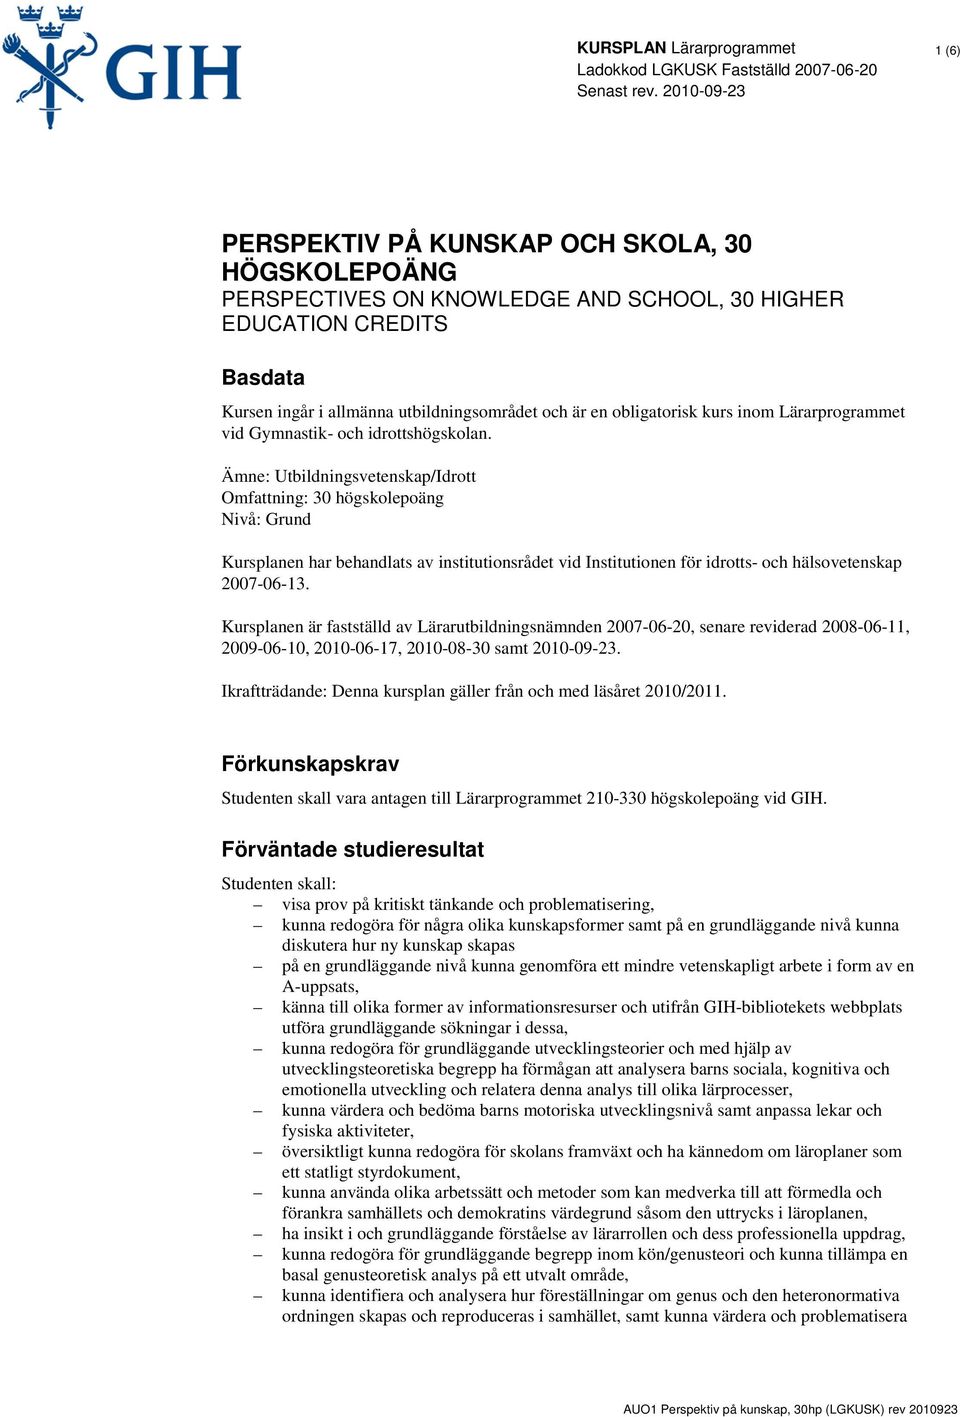 Ämne: Utbildningsvetenskap/Idrott Omfattning: 30 högskolepoäng Nivå: Grund Kursplanen har behandlats av institutionsrådet vid Institutionen för idrotts- och hälsovetenskap 2007-06-13.